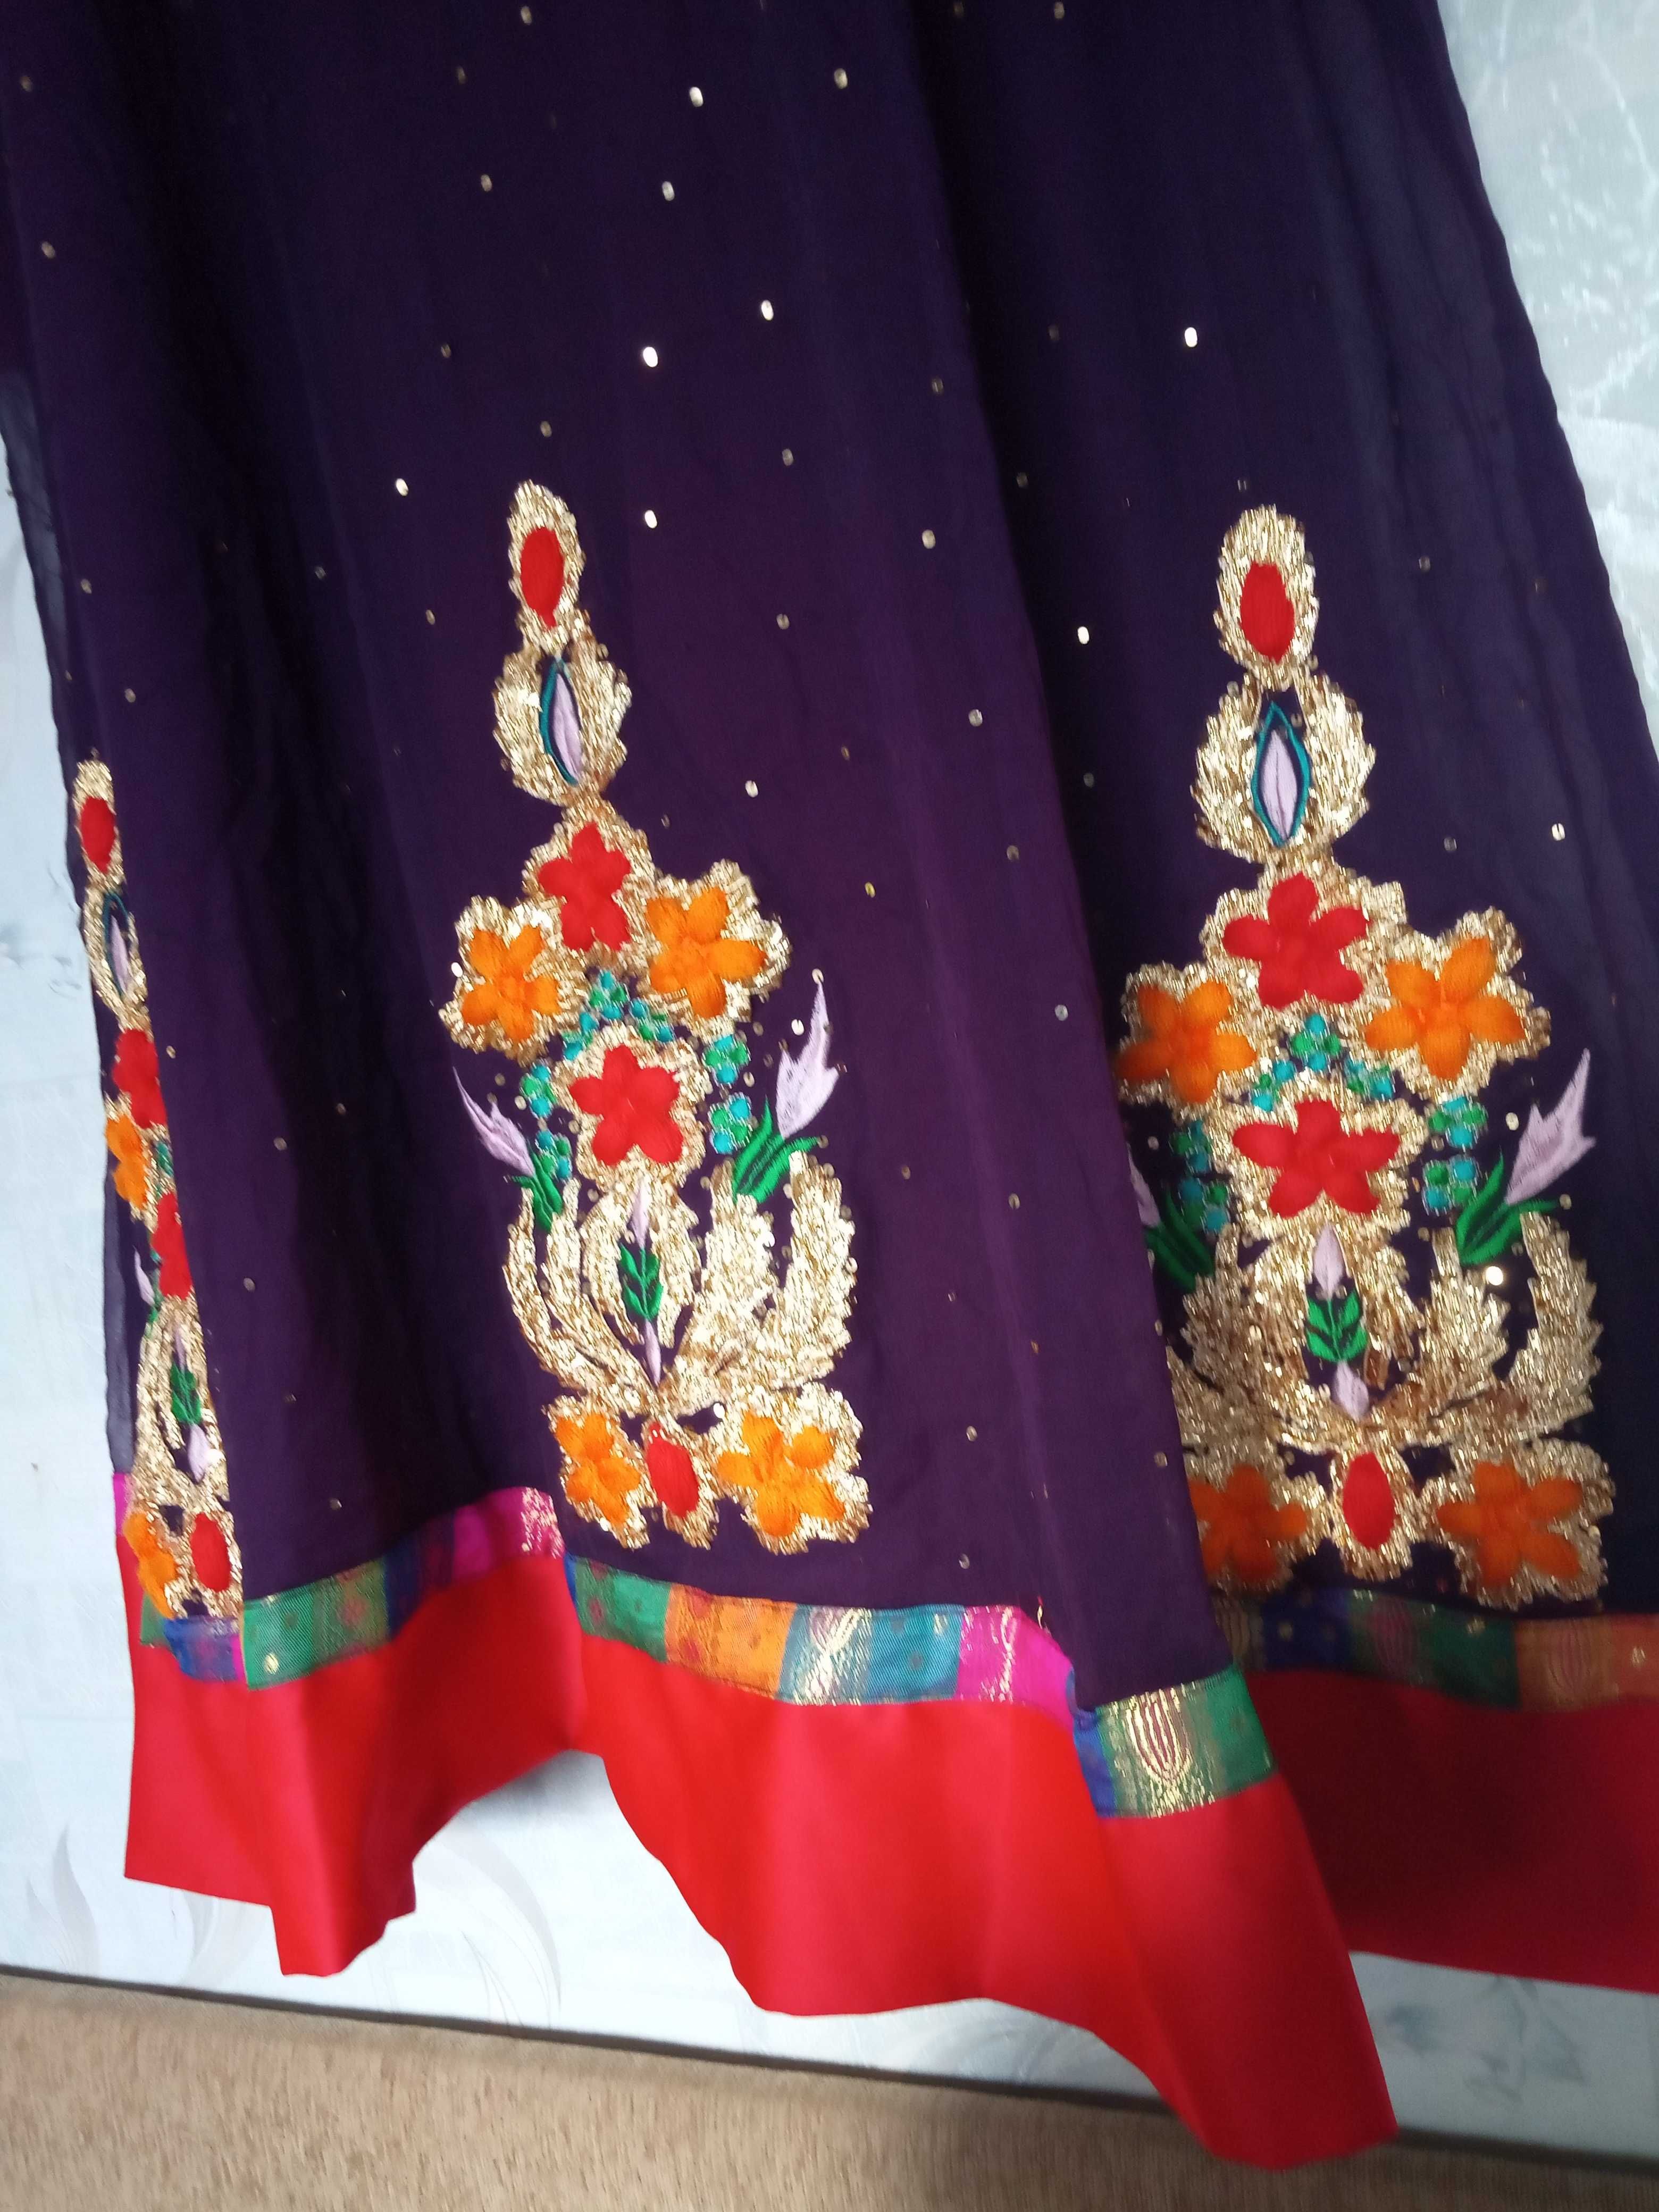 Восточное платье галабея костюм платье в индийском стиле сари